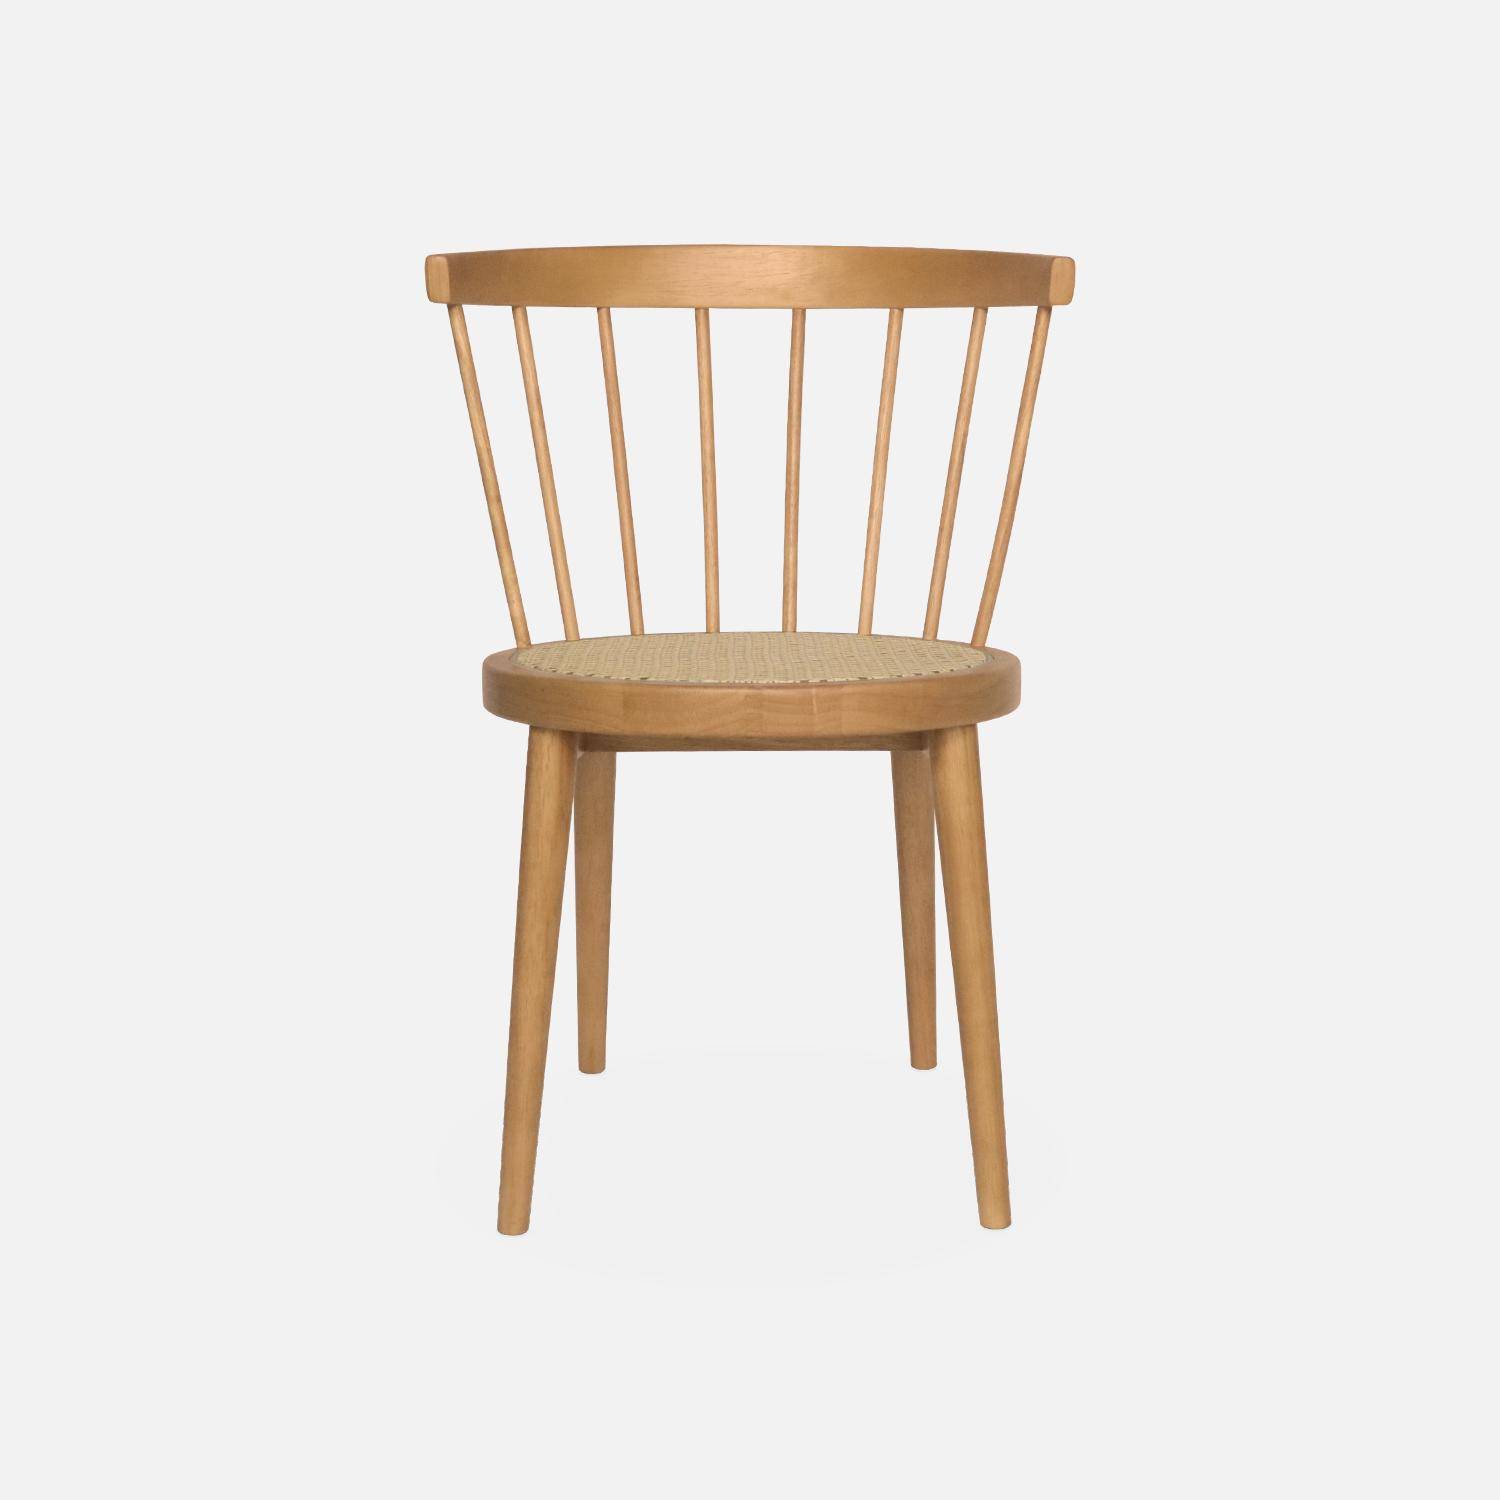 Set di 2 sedie in legno naturale e canna, Nora, L 54 x P 54 x H 76,5 cm. Photo6